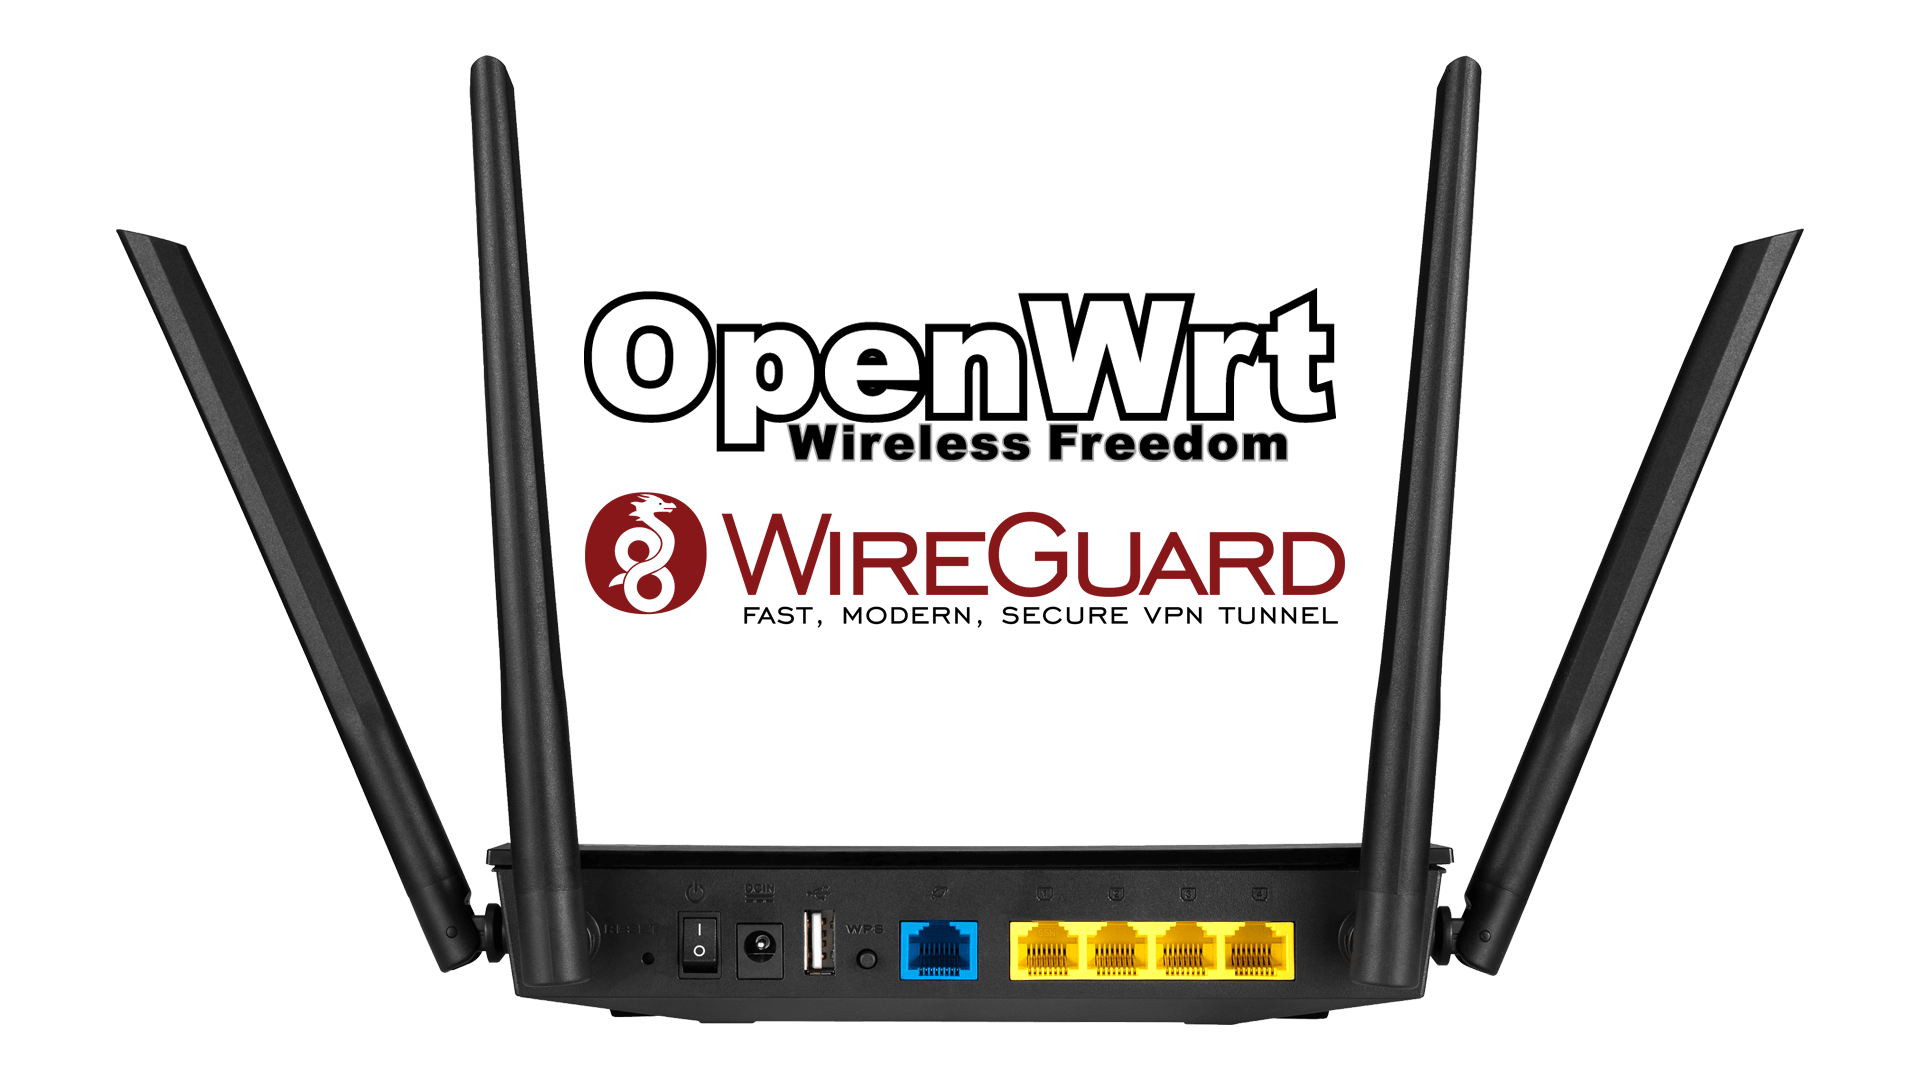 Instalacja serwera VPN na routerze z OpenWrt (WireGuard)